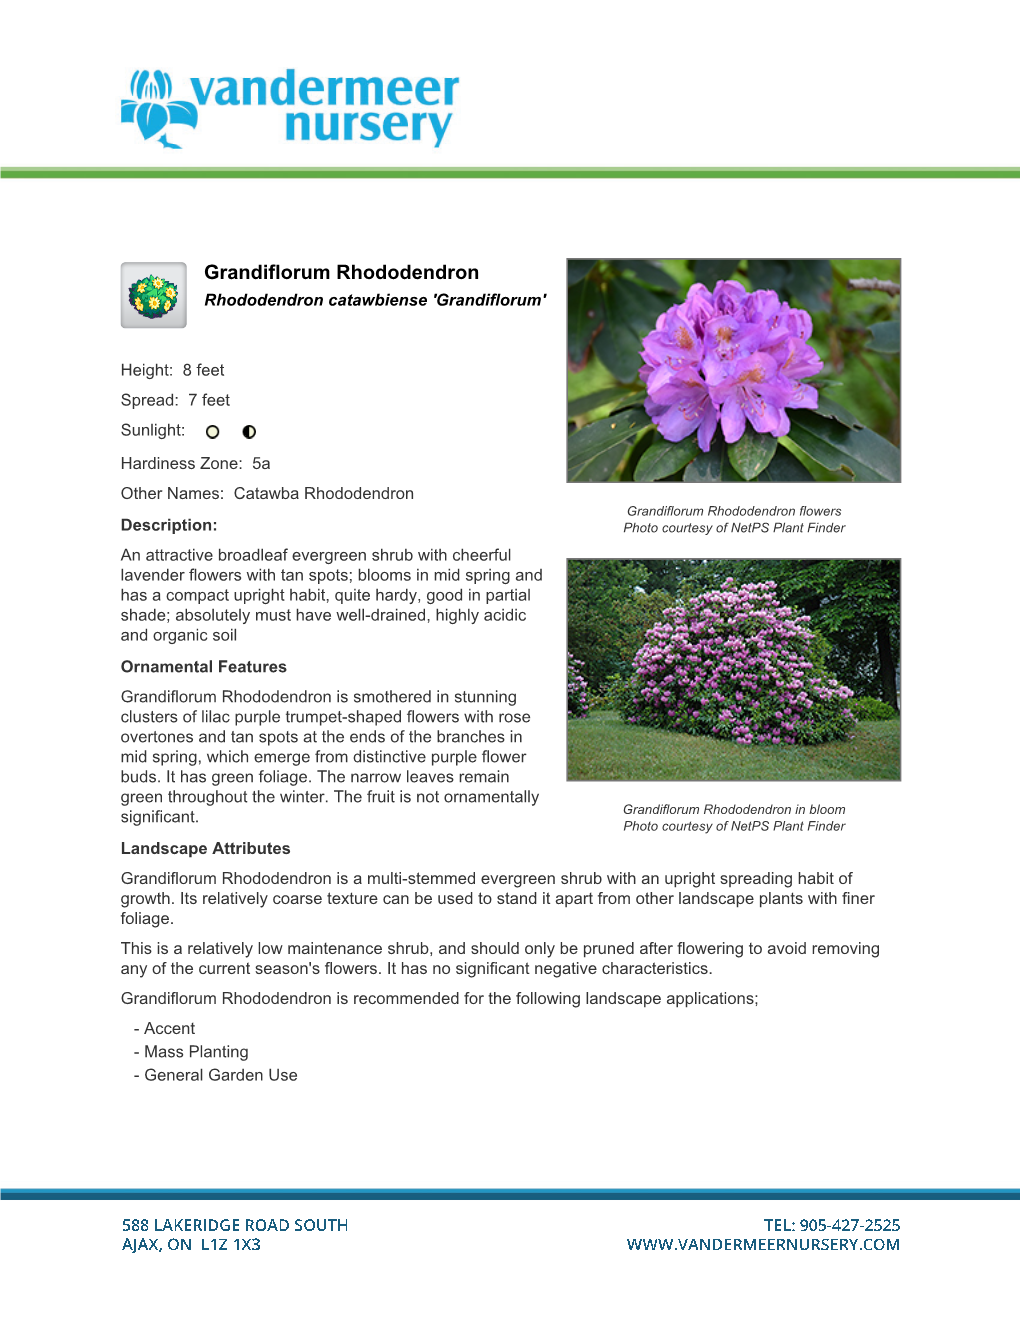 Grandiflorum Rhododendron Rhododendron Catawbiense 'Grandiflorum'